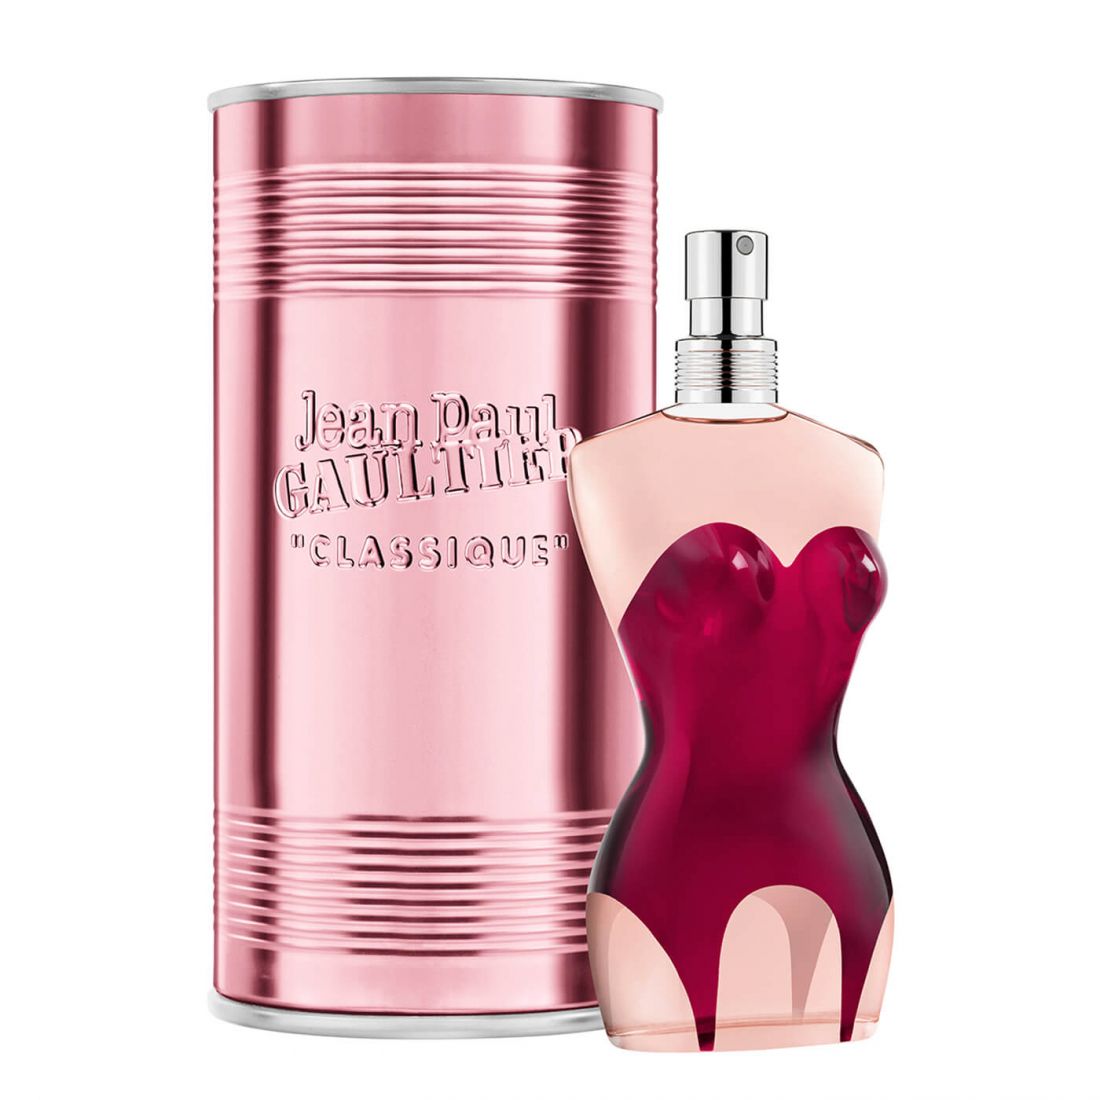 Jean Paul Gaultier - Eau de parfum 'Classique' - 50 ml